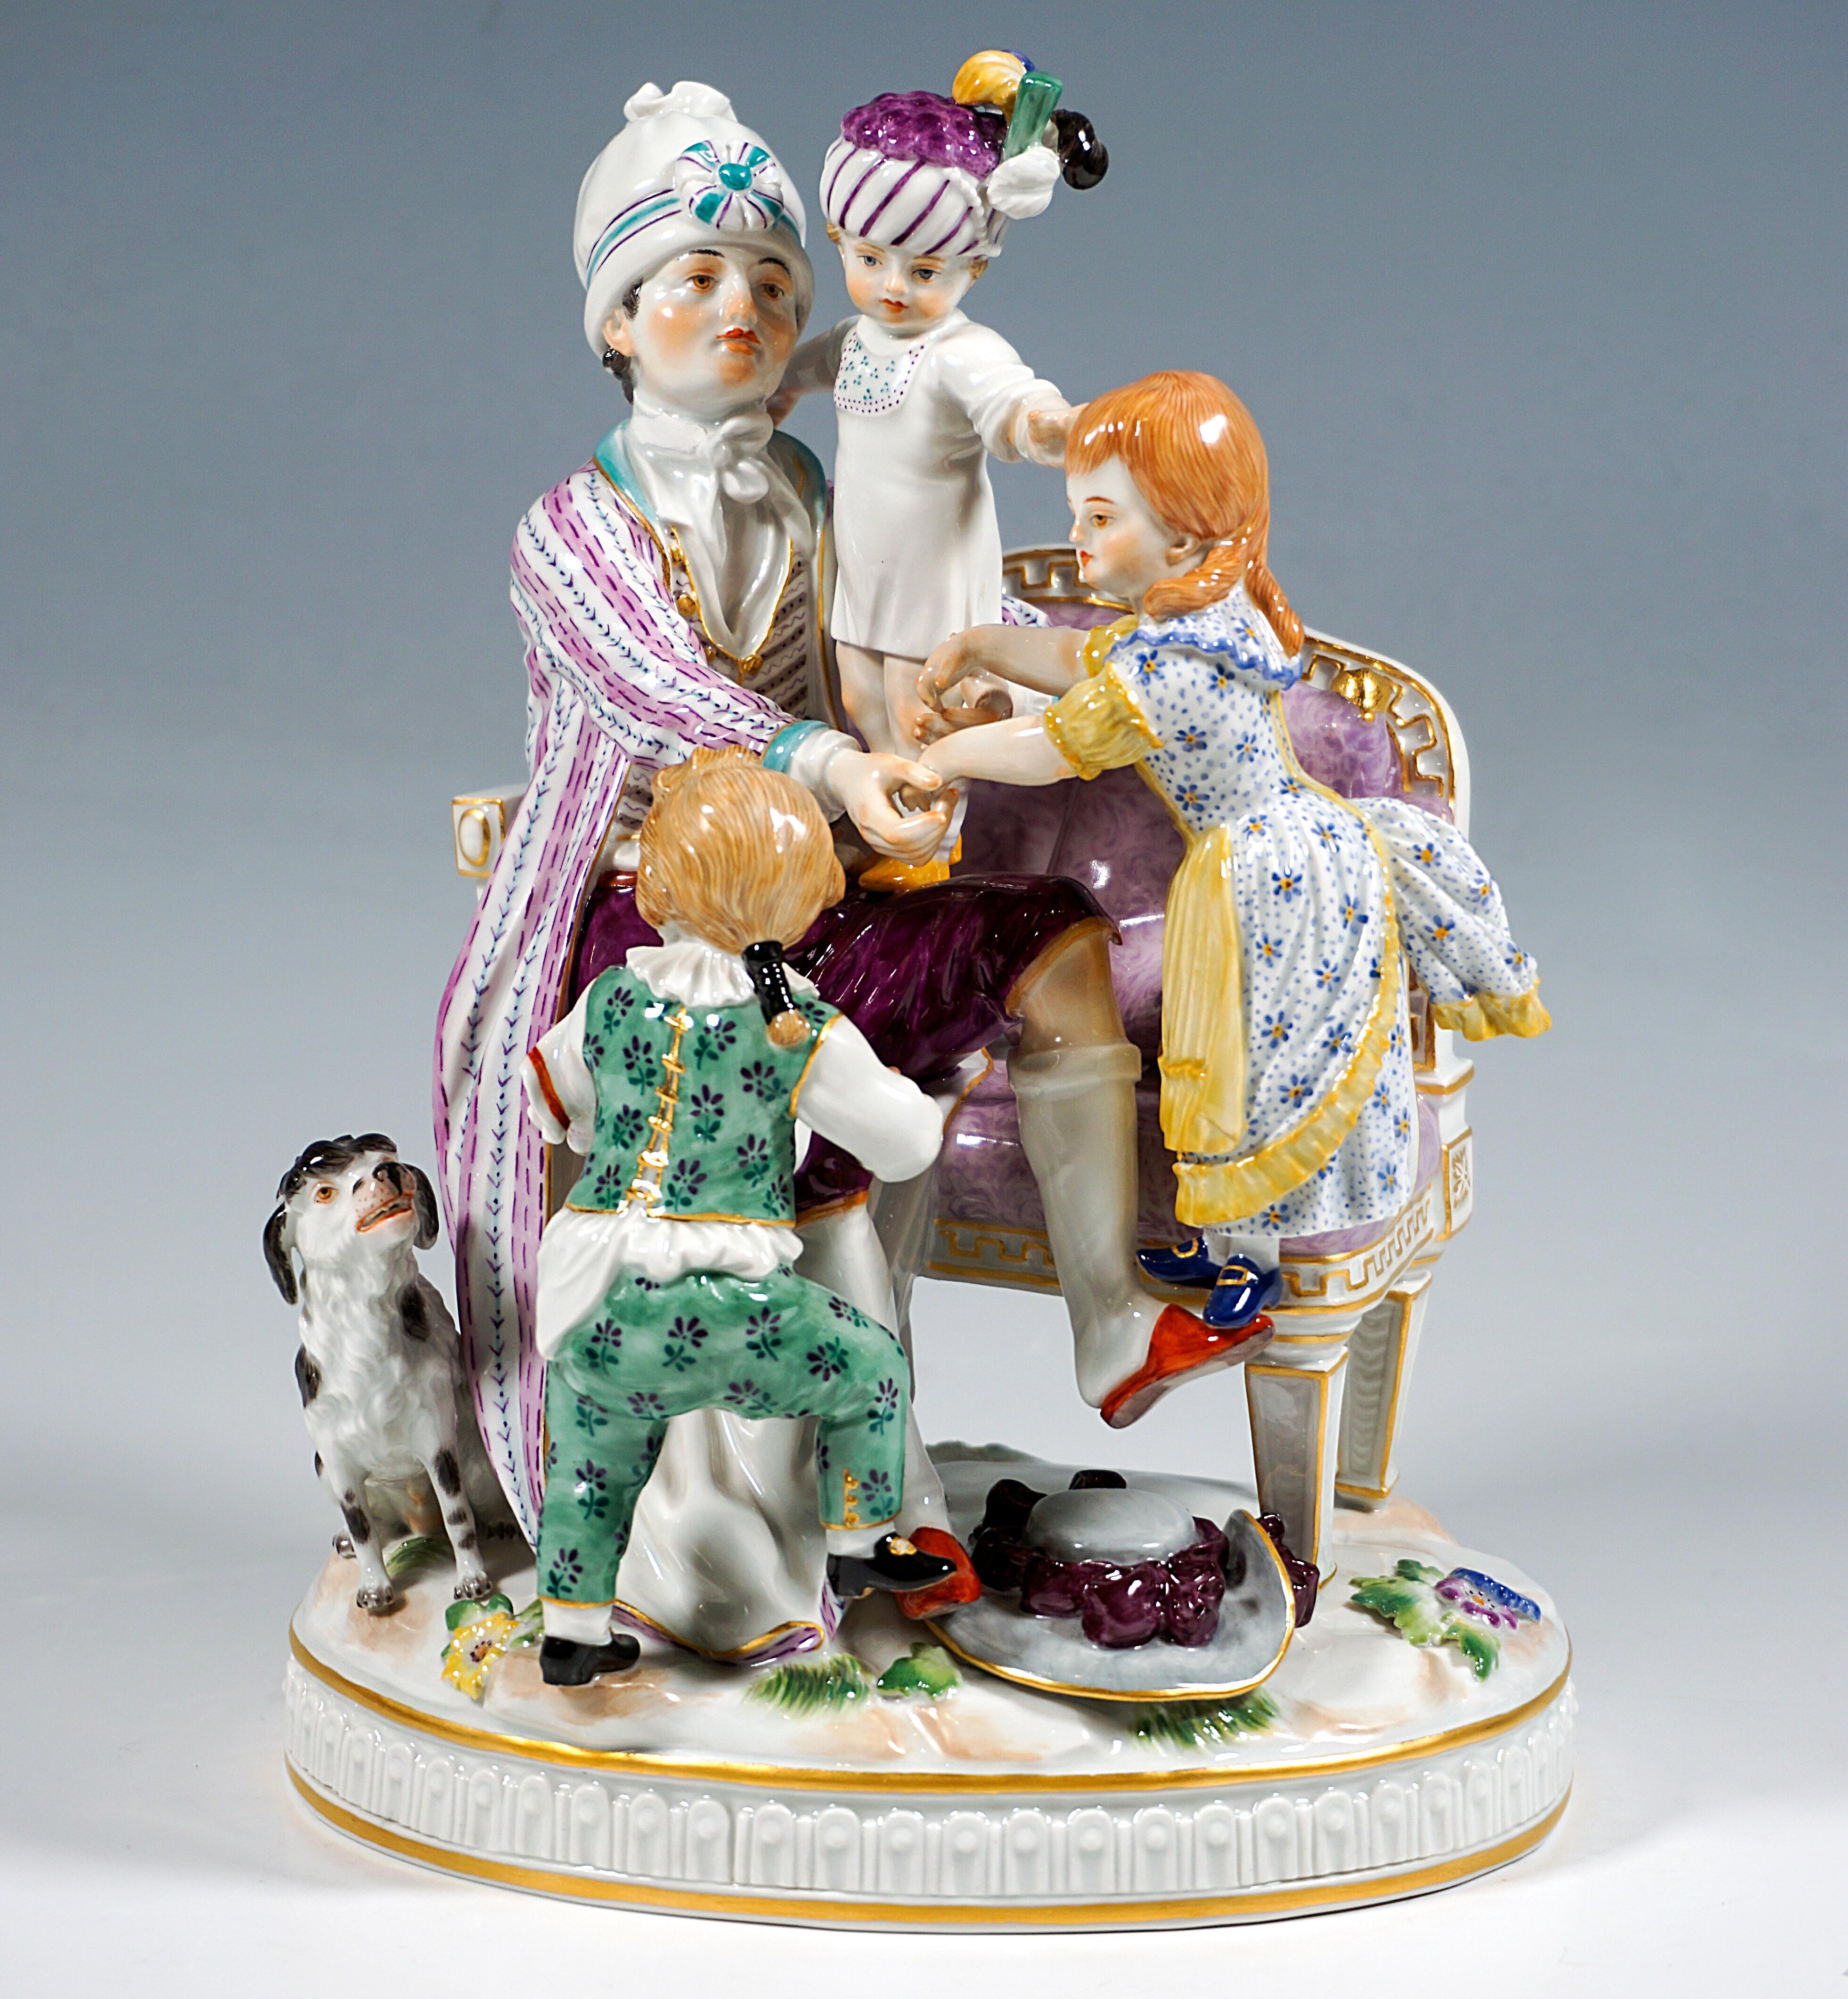 Excellent groupe de genre en porcelaine de Meissen :
Le père en tenue domestique (robe de chambre sur des vêtements d'intérieur élaborés, pantoufles, chapeau haut de forme) assis sur un banc coussiné et occupé à surveiller ses trois enfants : Un